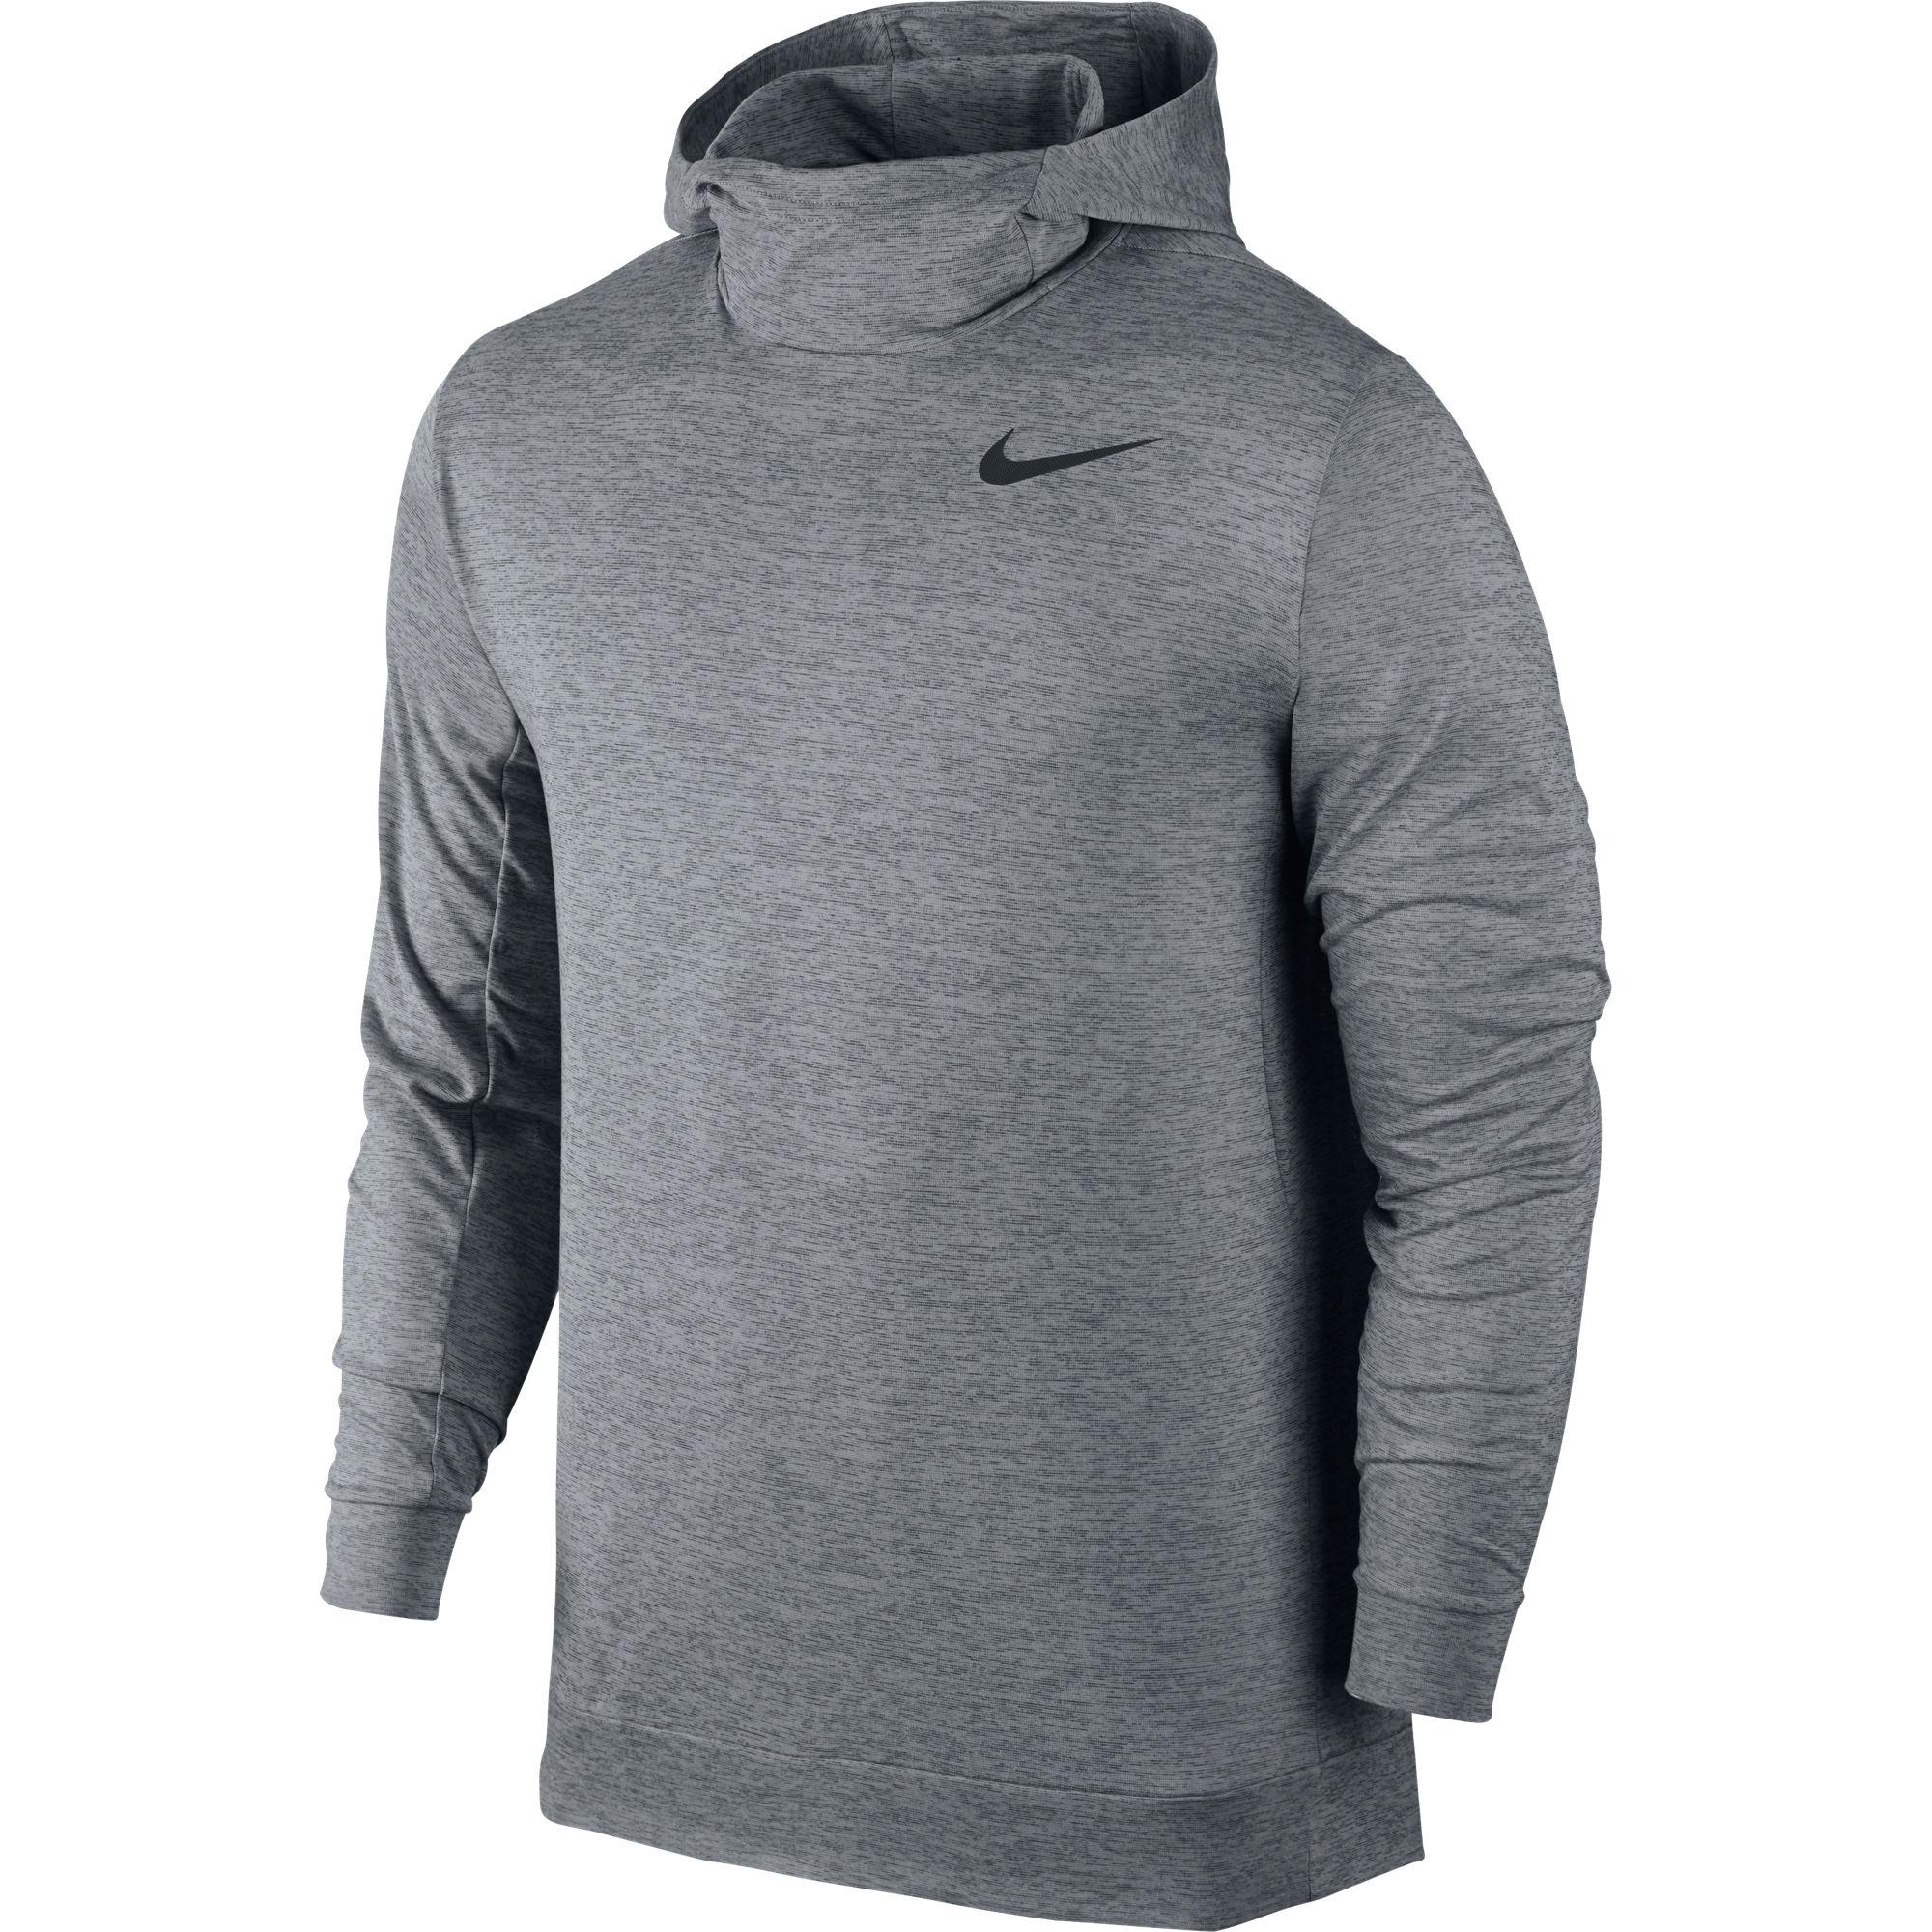 Nike Mens Dry Training Hoodie - Cool Grey - Tennisnuts.com